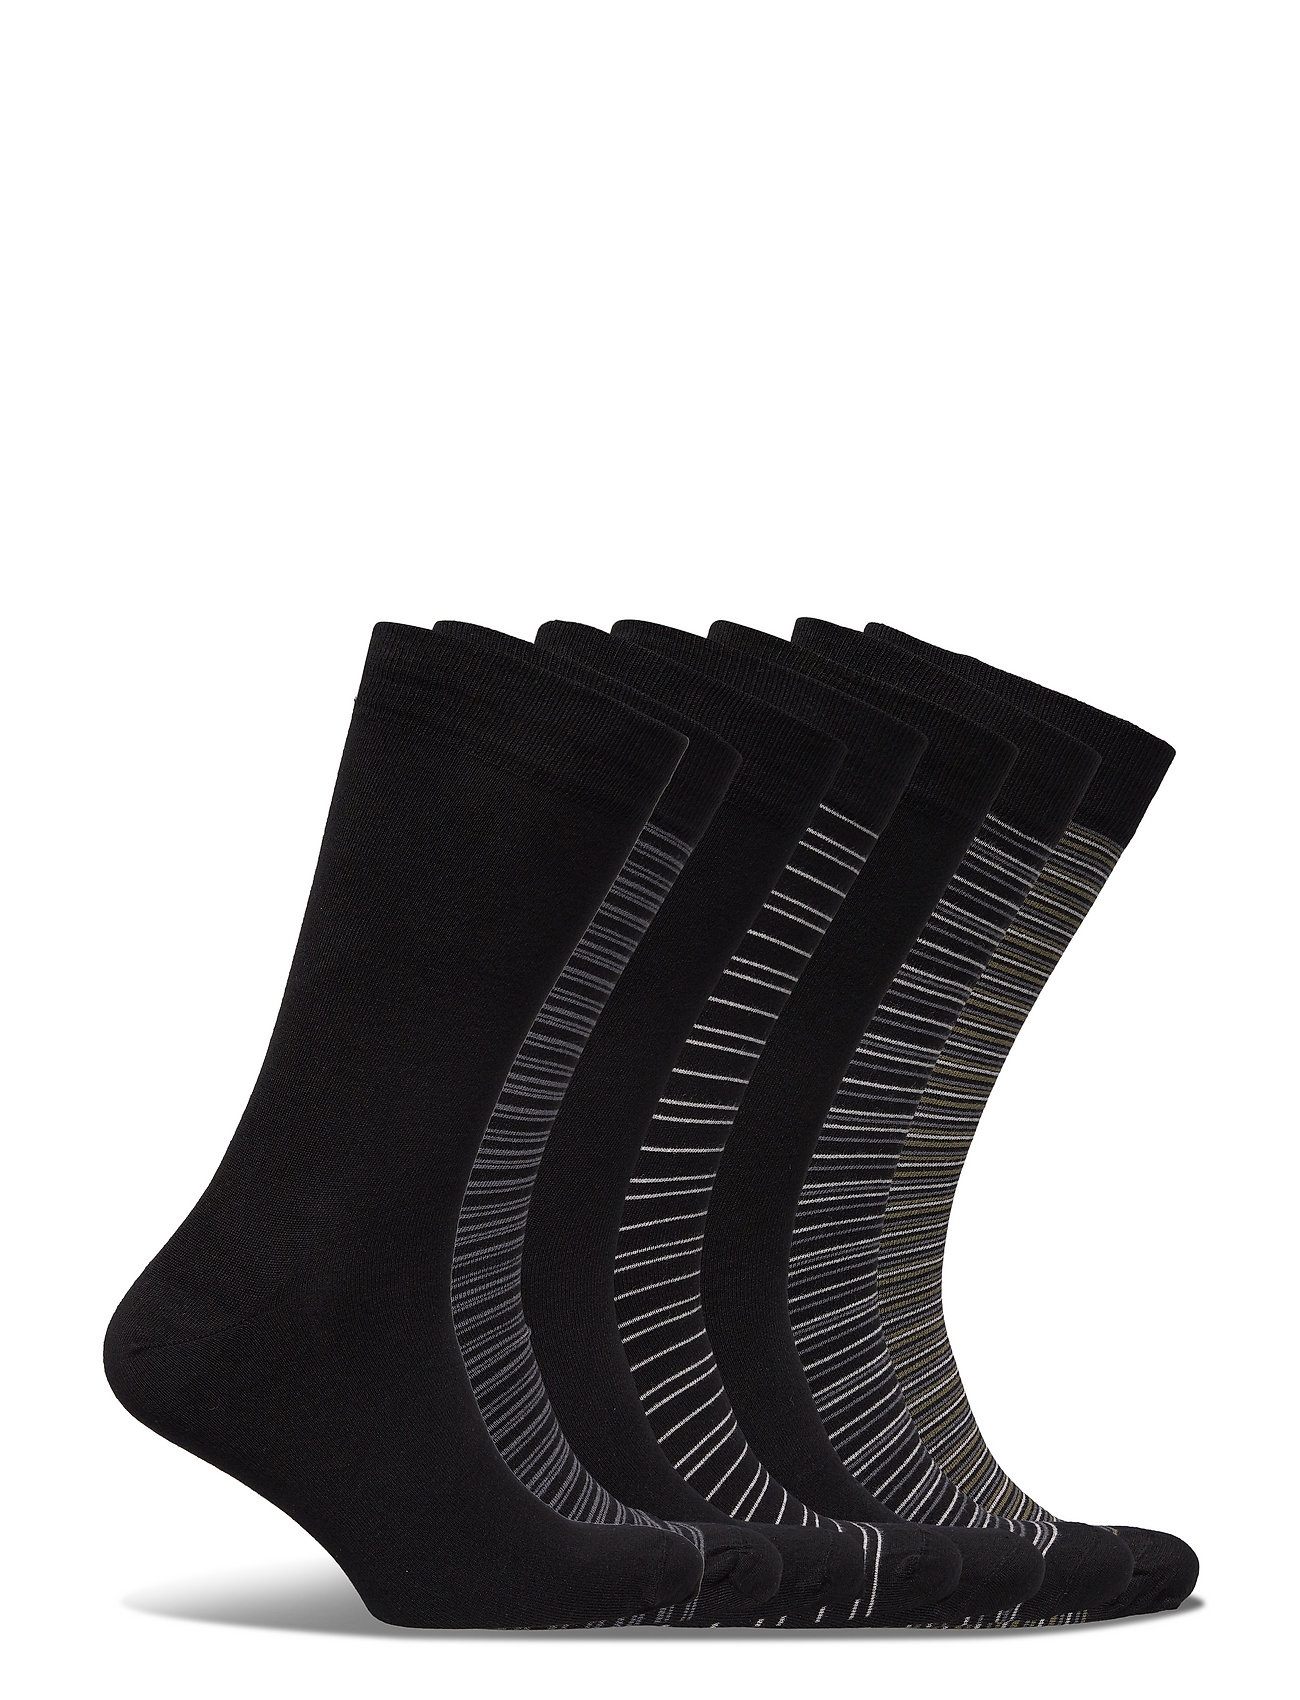 Dovre - Dovre Bamboo socks 7 pack - madalaimad hinnad - flerfärgad - 1